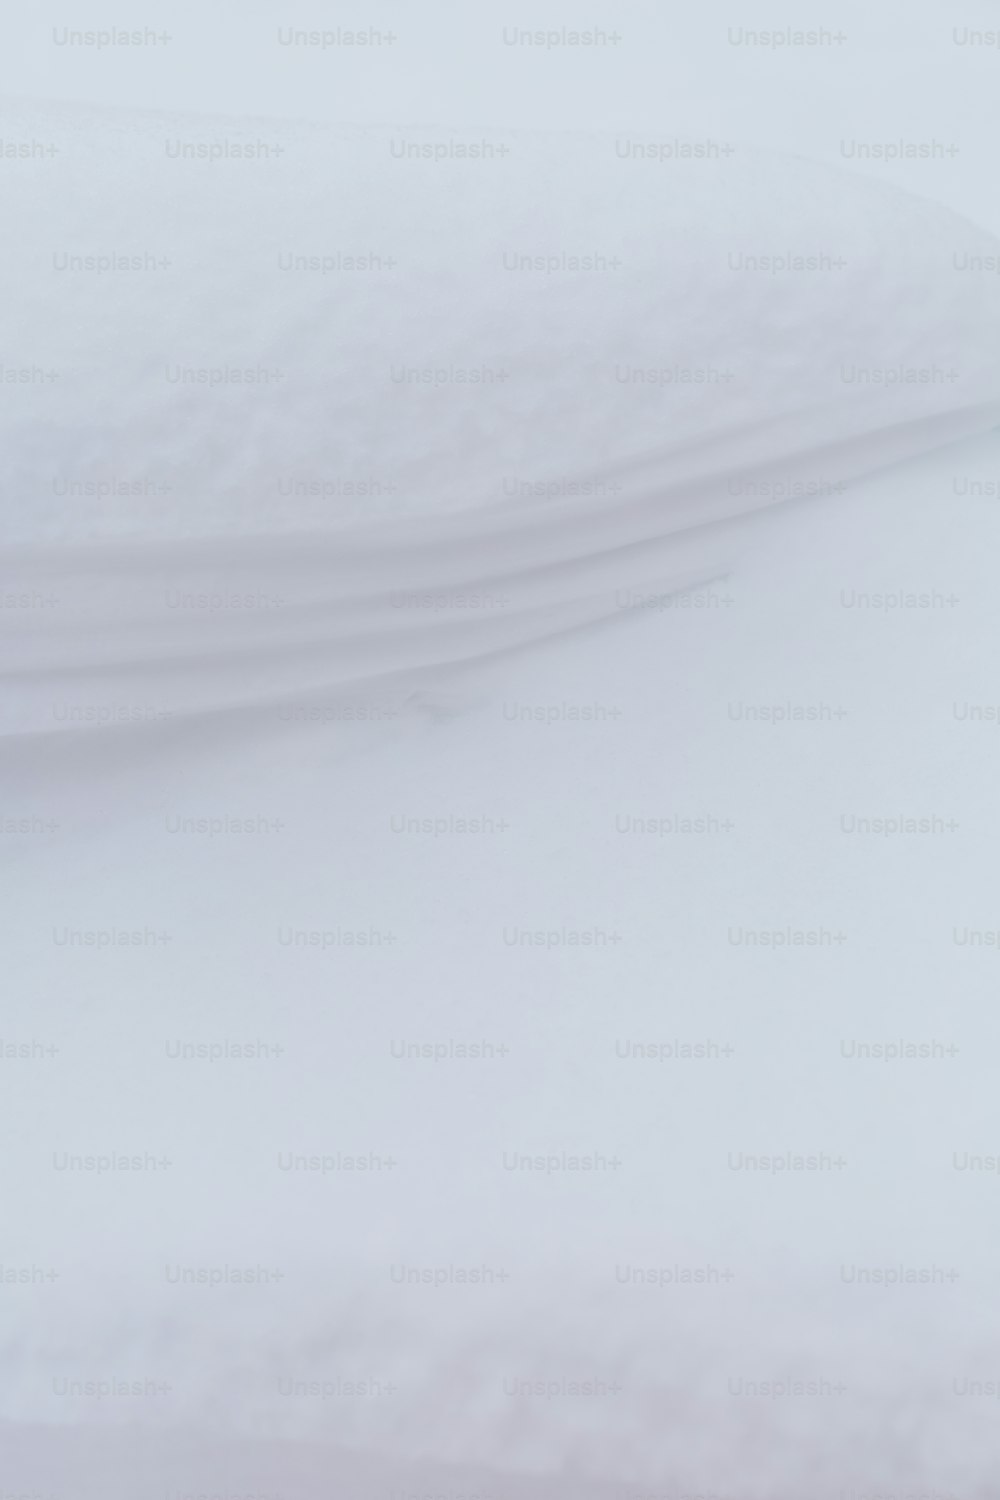 スノーボーダーが雪の中の丘を下っている